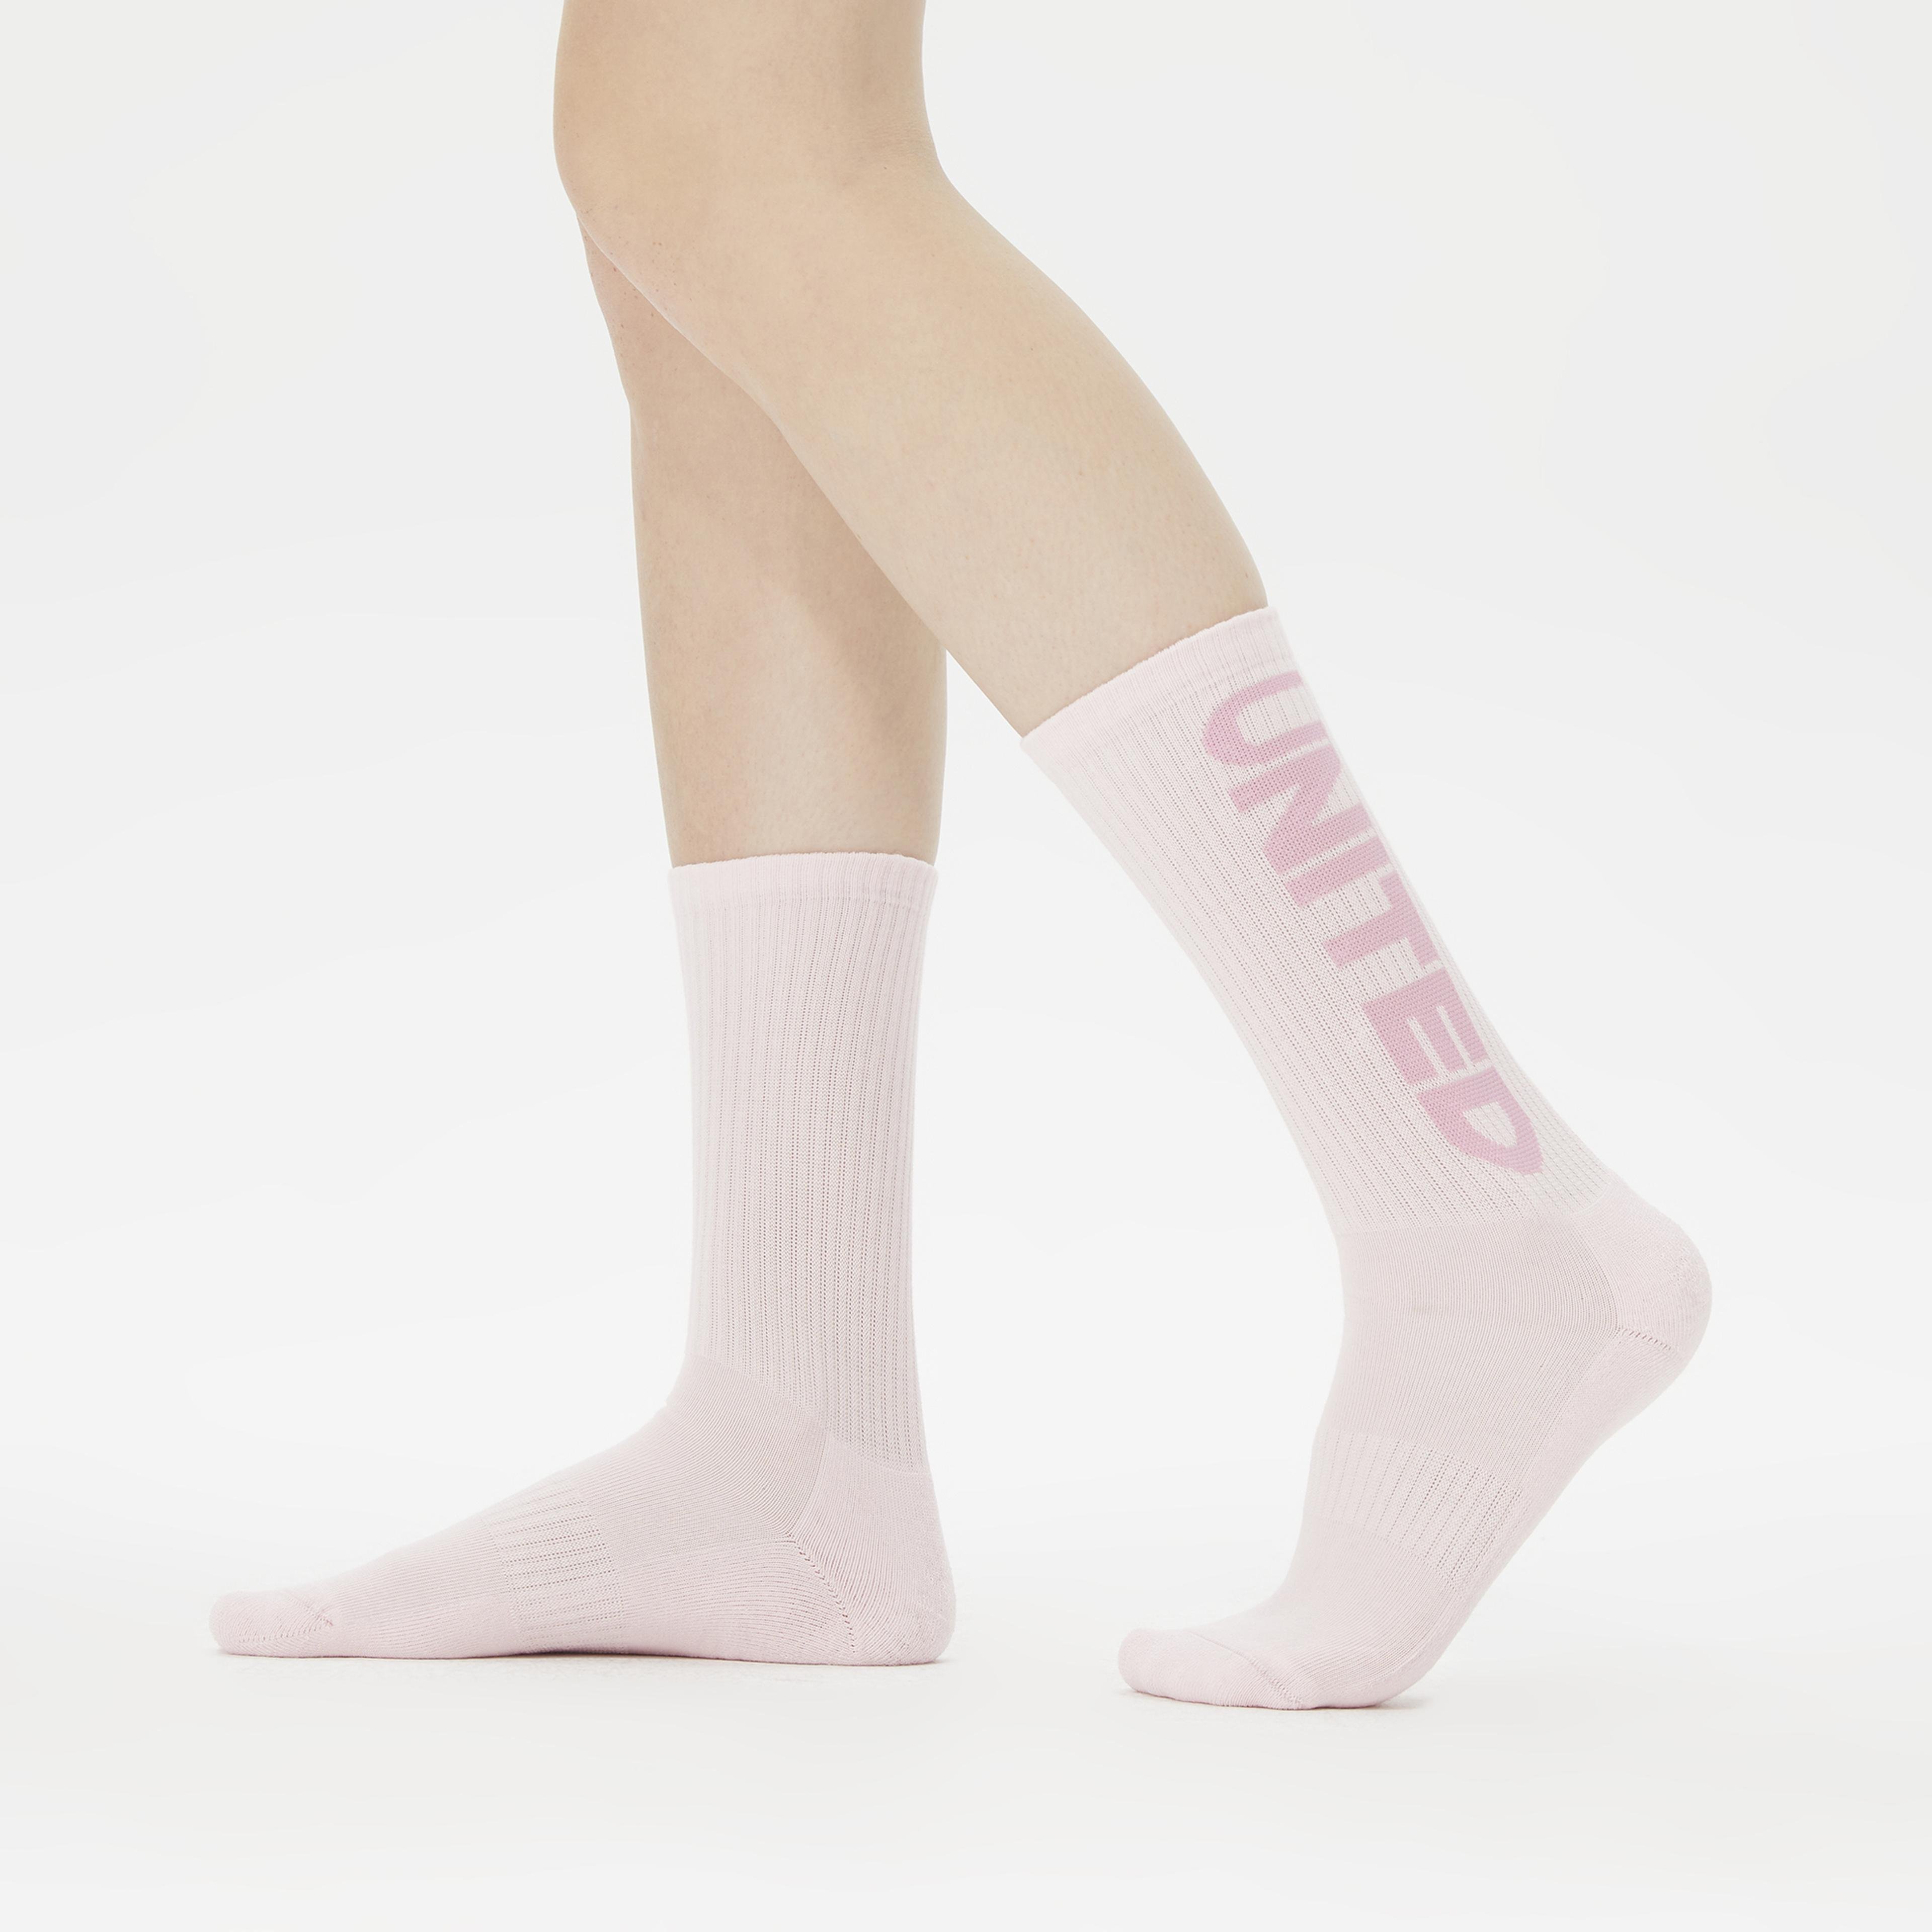 UNITED4 Cure Kadın Mor/Sarı/Pembe 3'lü Çorap